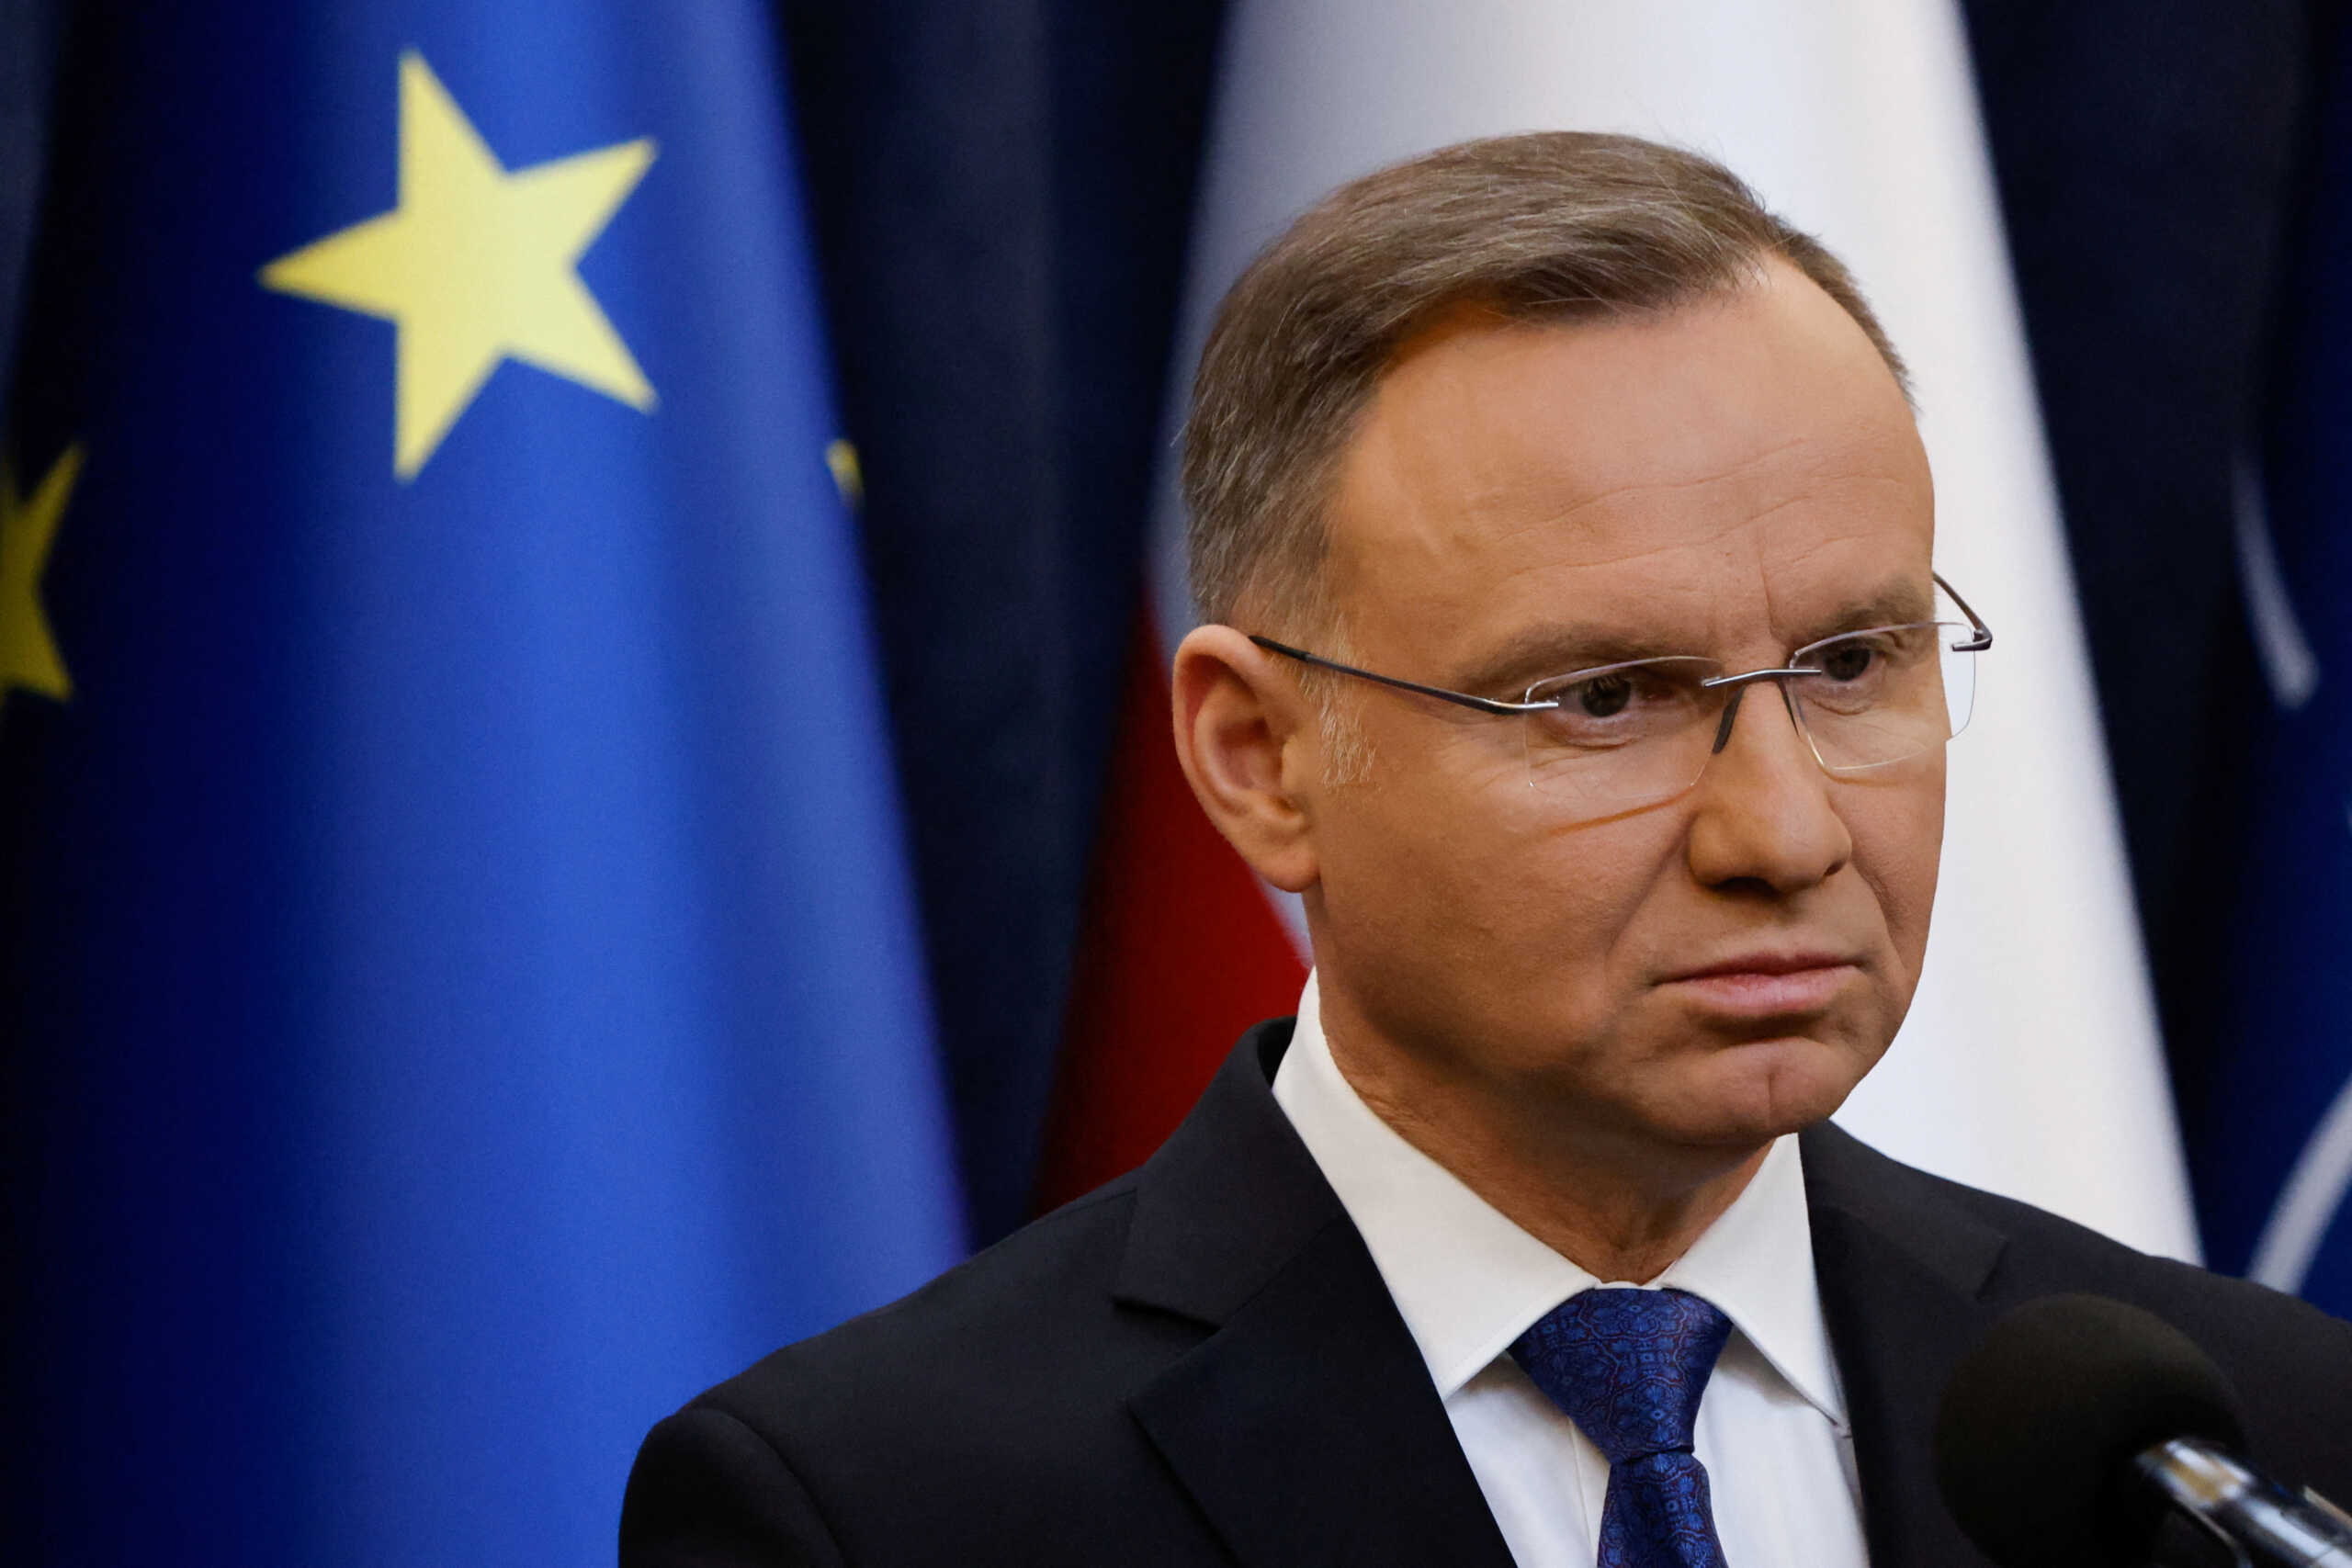 Πολωνία: Ο πρόεδρος Ντούντα απονέμει χάρη σε φυλακισμένα υπουργικά στελέχη της προηγούμενης κυβέρνησης